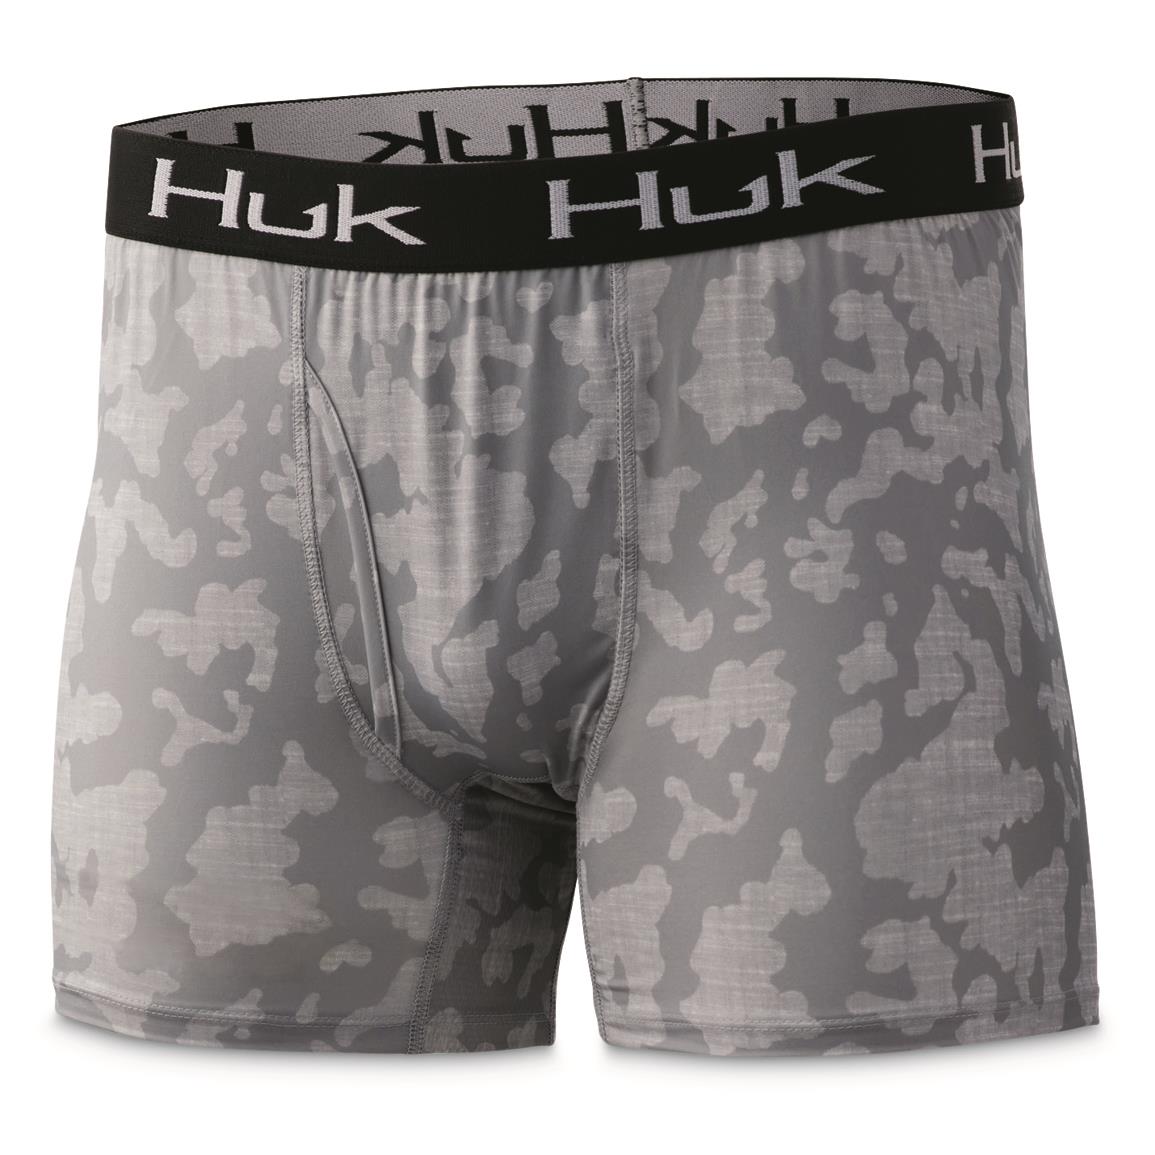 Huk Men's Running Lakes Boxer Briefs, Overcast Gray